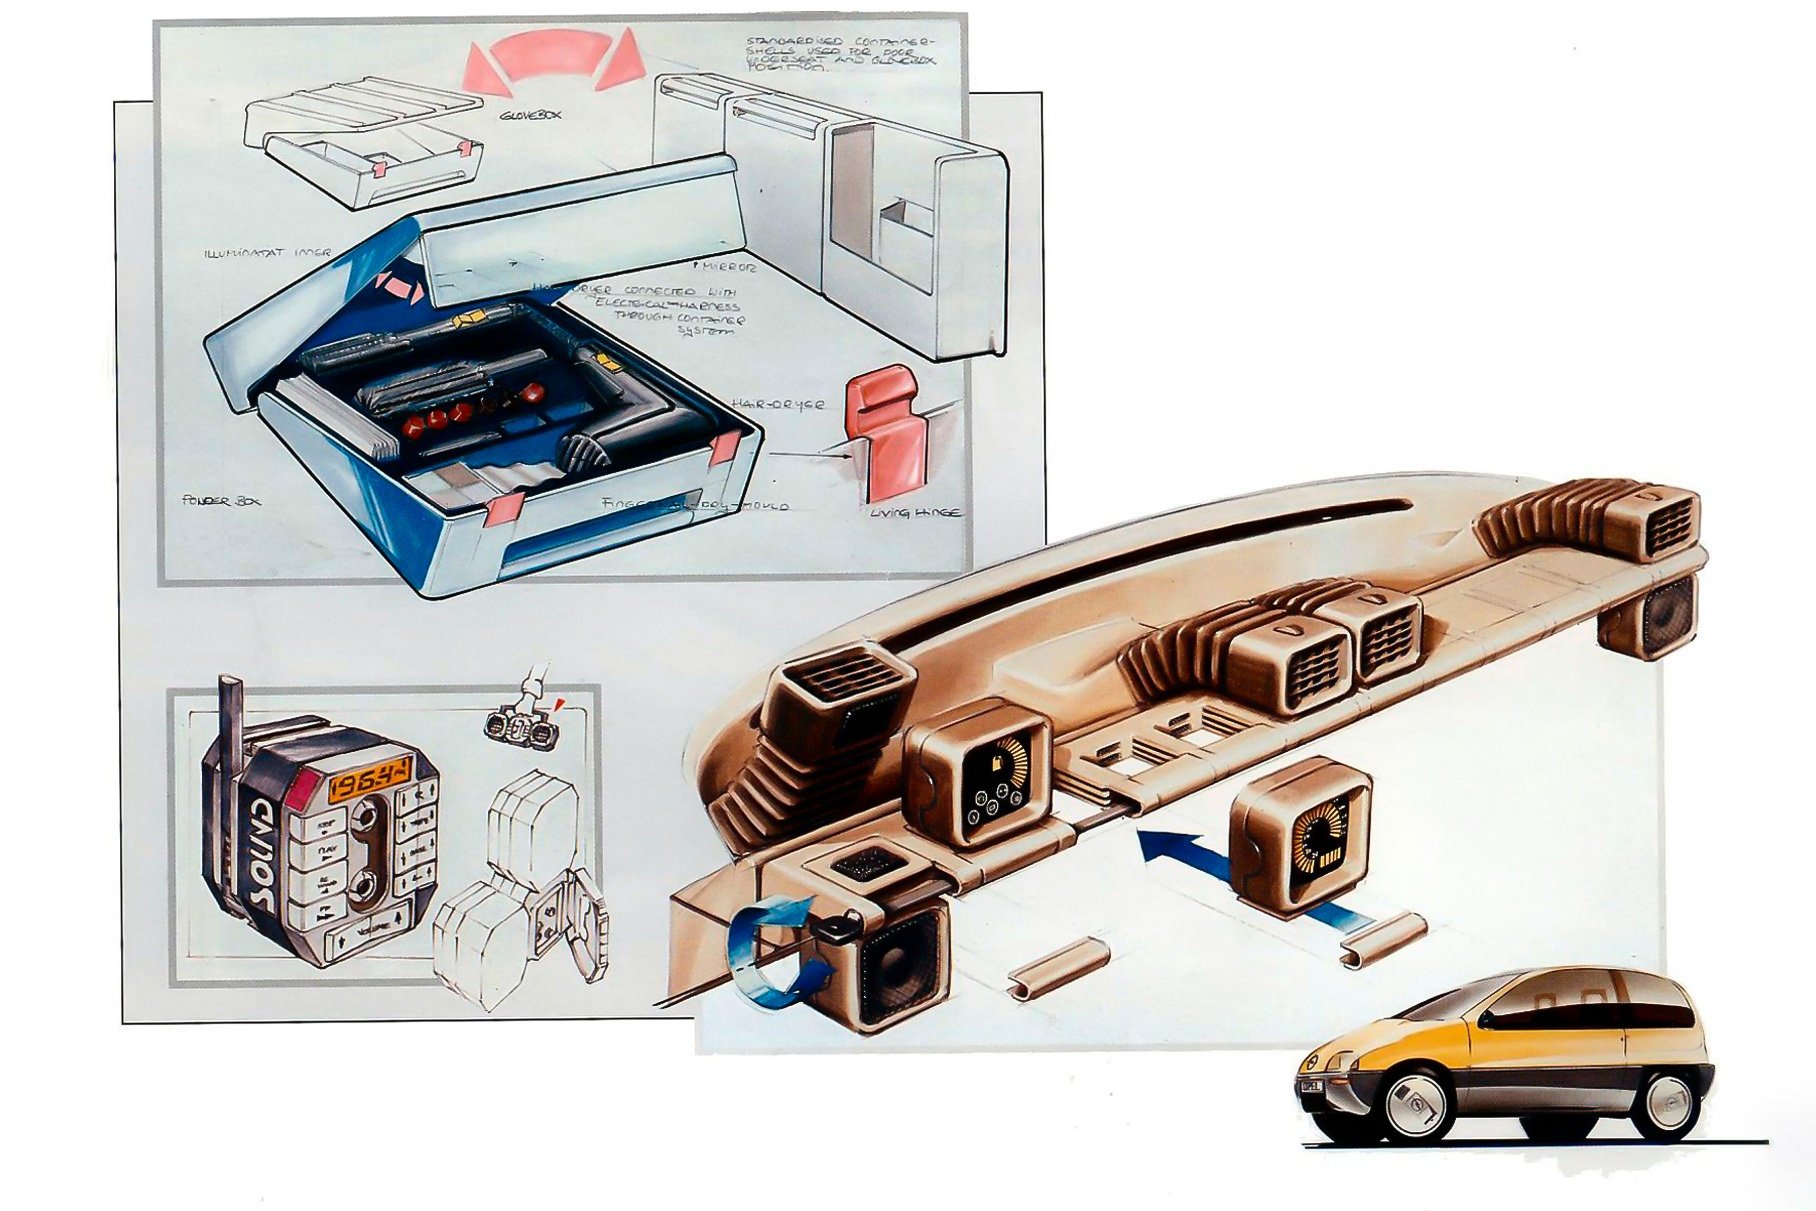 Концепт-кар из восьмидесятых с дизайном девяностых и технологиями 2000-х, AvtoSpot [АвтоСпот]